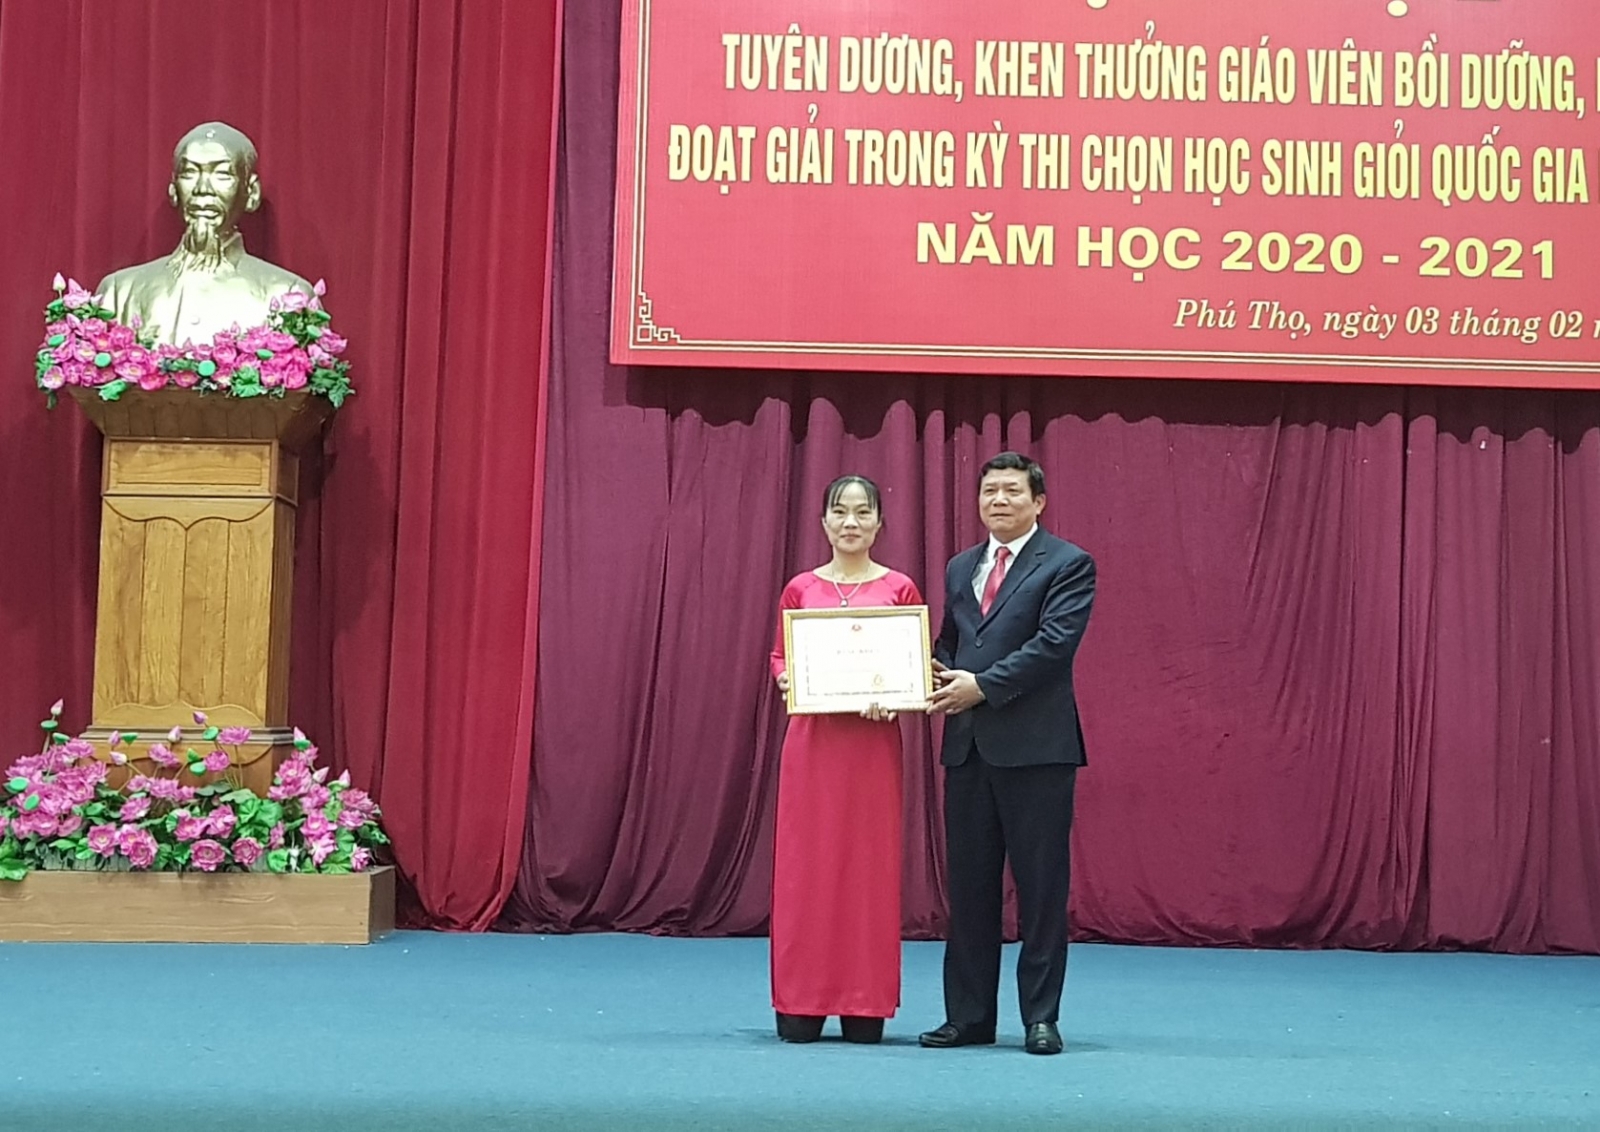 Phú Thọ: Khen thưởng giáo viên bồi dưỡng, học sinh giỏi quốc gia - Ảnh minh hoạ 2